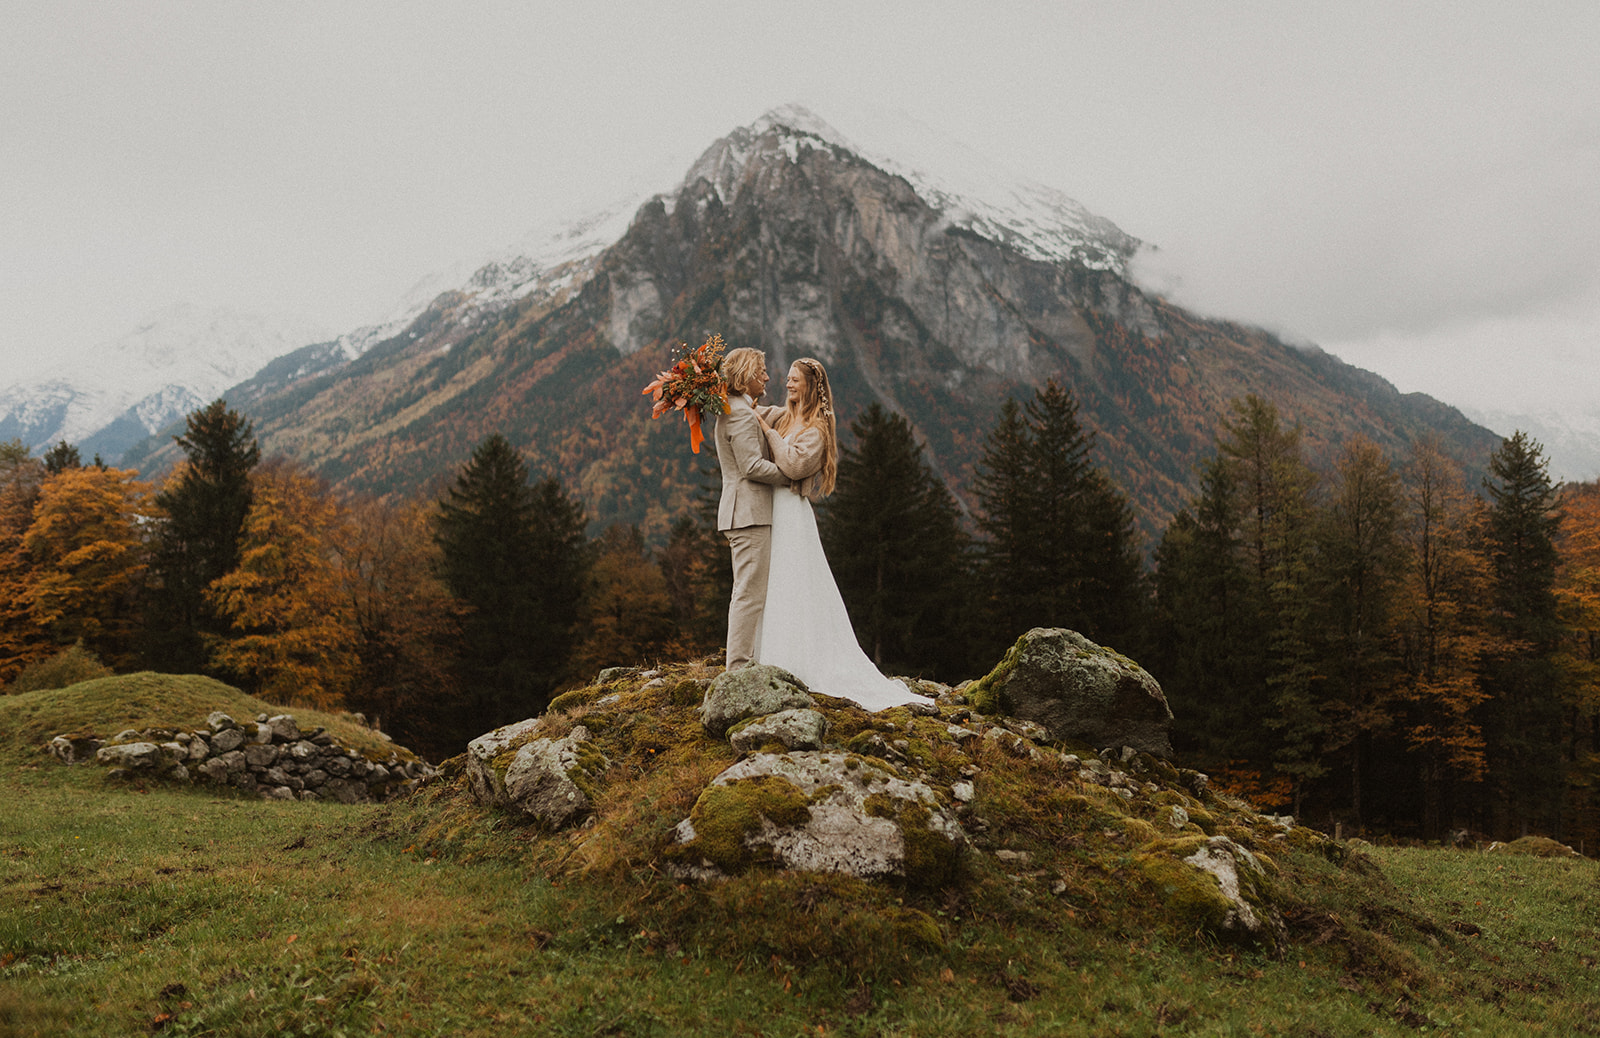 Hochzeits Fotoshooting mit einem Brautpaar in den Bergen. Paar steht auf einem Stein mit einem grossen Berg im Hintergrund. Meiringen Schweiz.